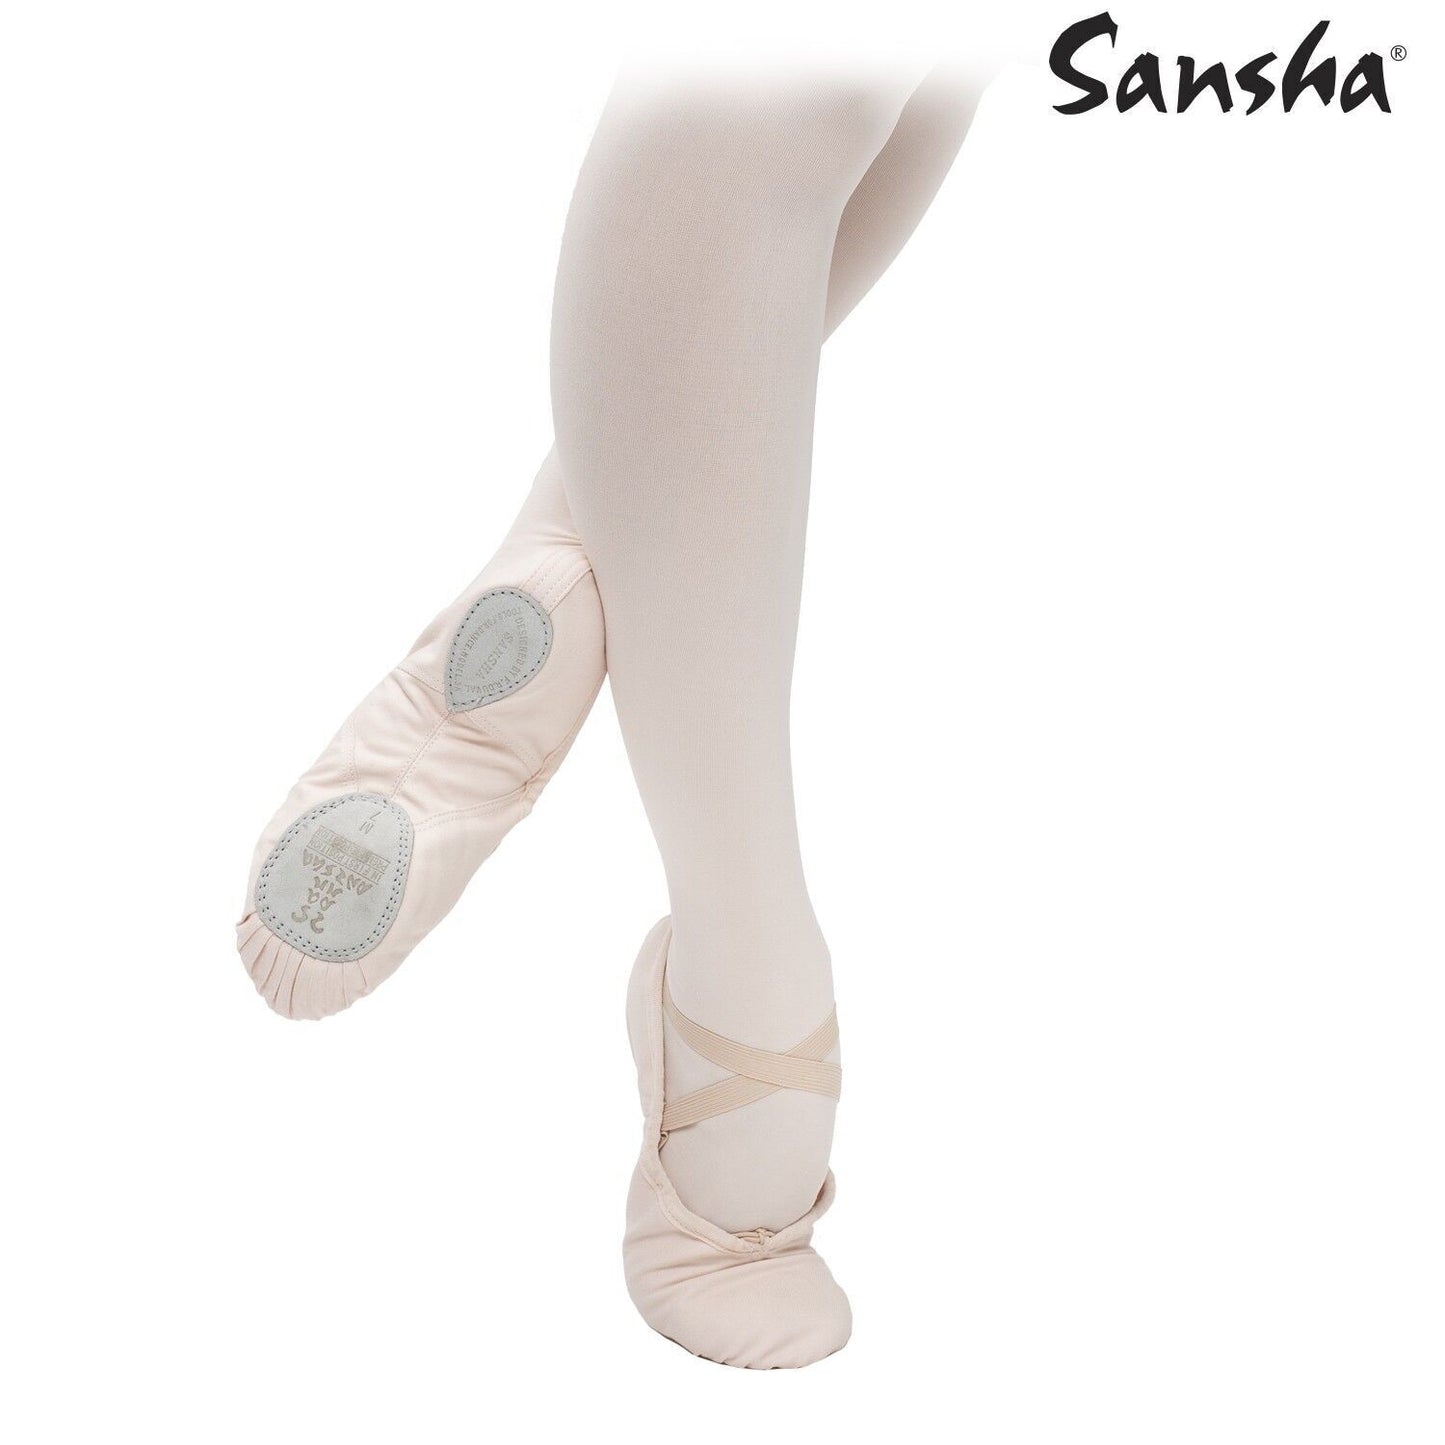 Sansha - Silhouette 3C scarpette Danza Classica bambina ragazza scarpe tela Ballerine